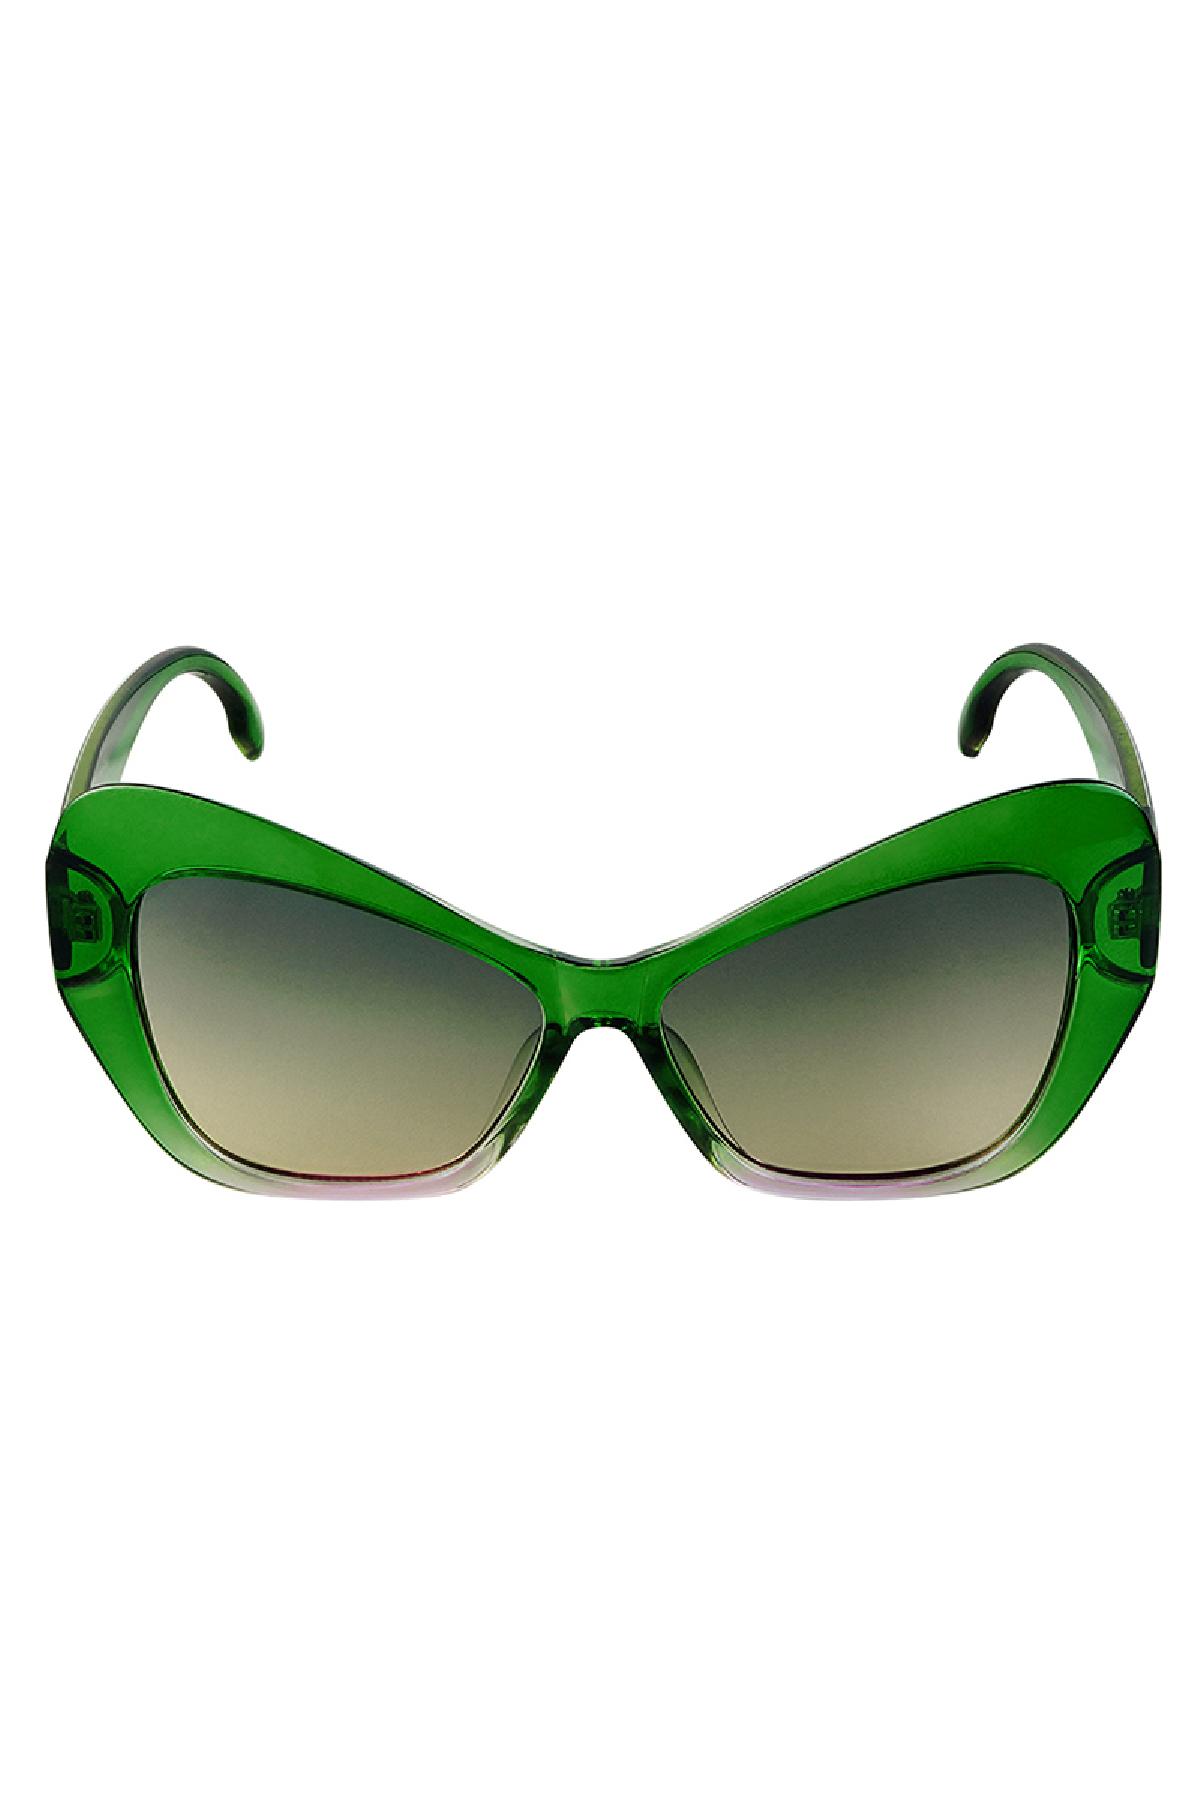 Güneş gözlüğü bildirimi Green PC One size h5 Resim3